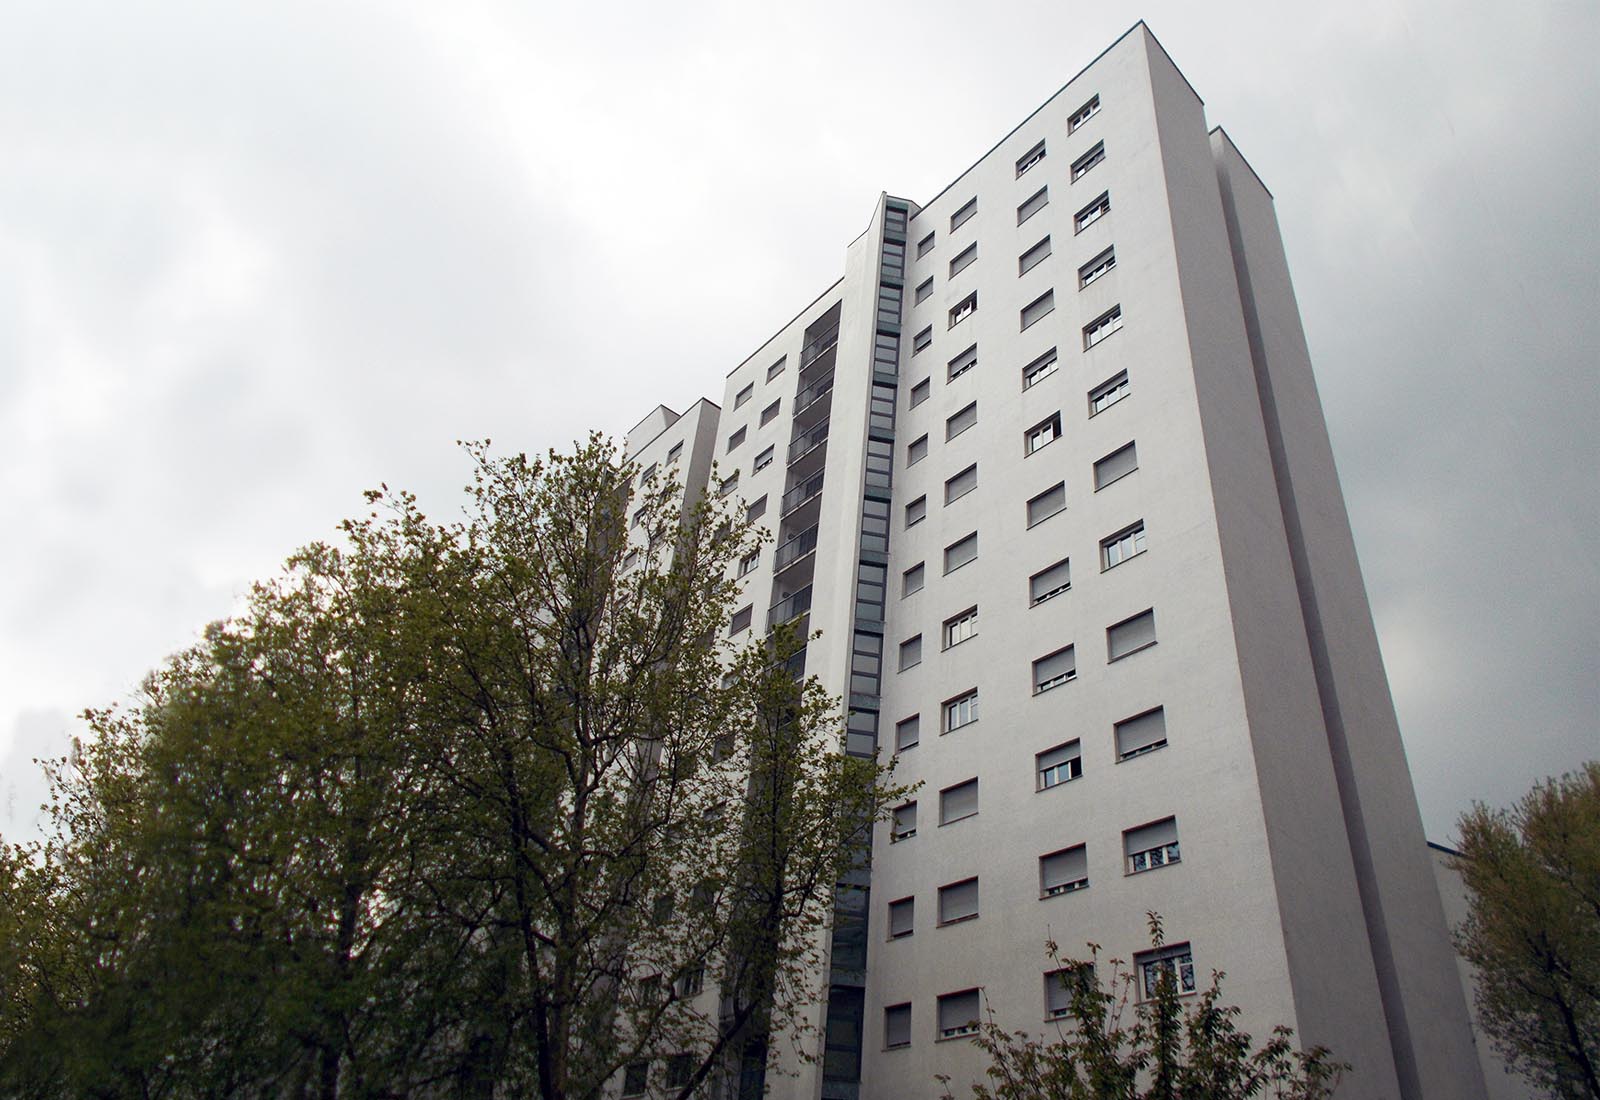 Residenza universitaria di via Corridoni - Vista della torre A